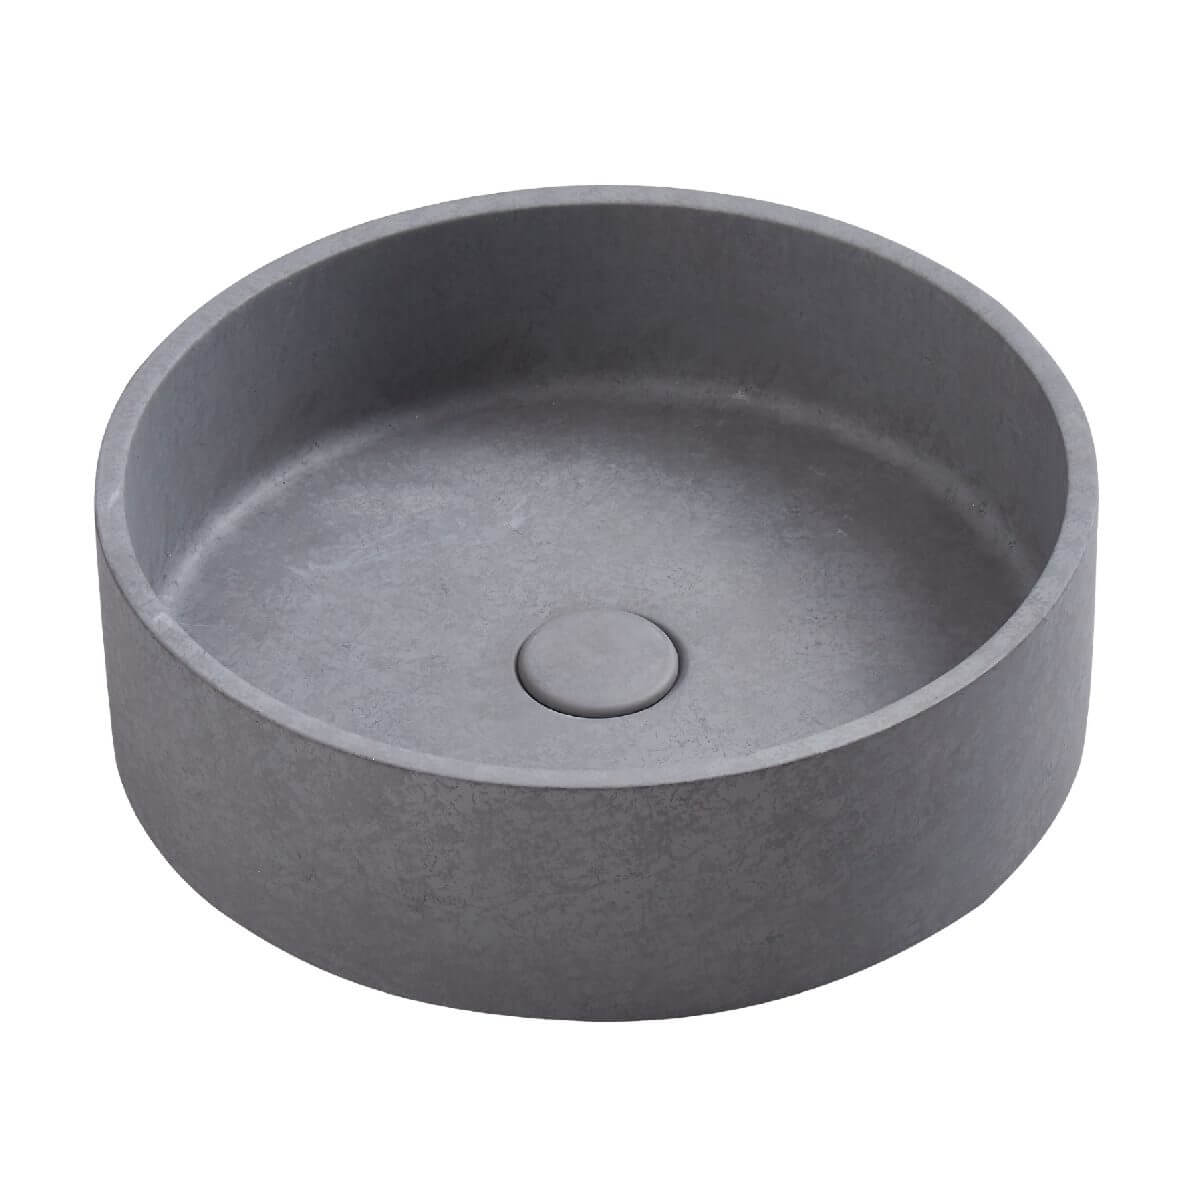 concrete basin round perugia French grey